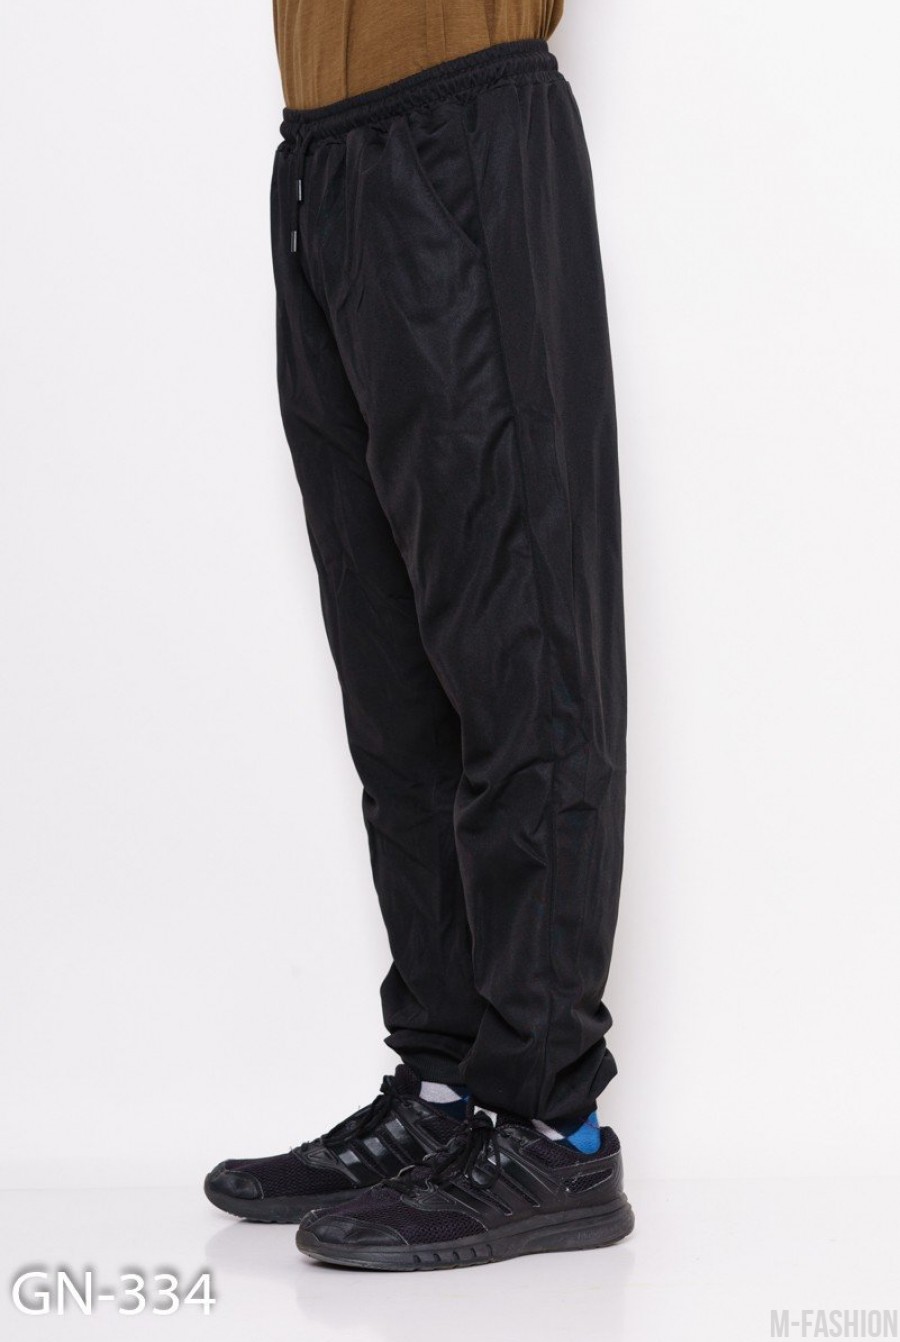 Черные свободные штаны на манжетах с декоративной вставкой на кармане с молнией- Фото 2